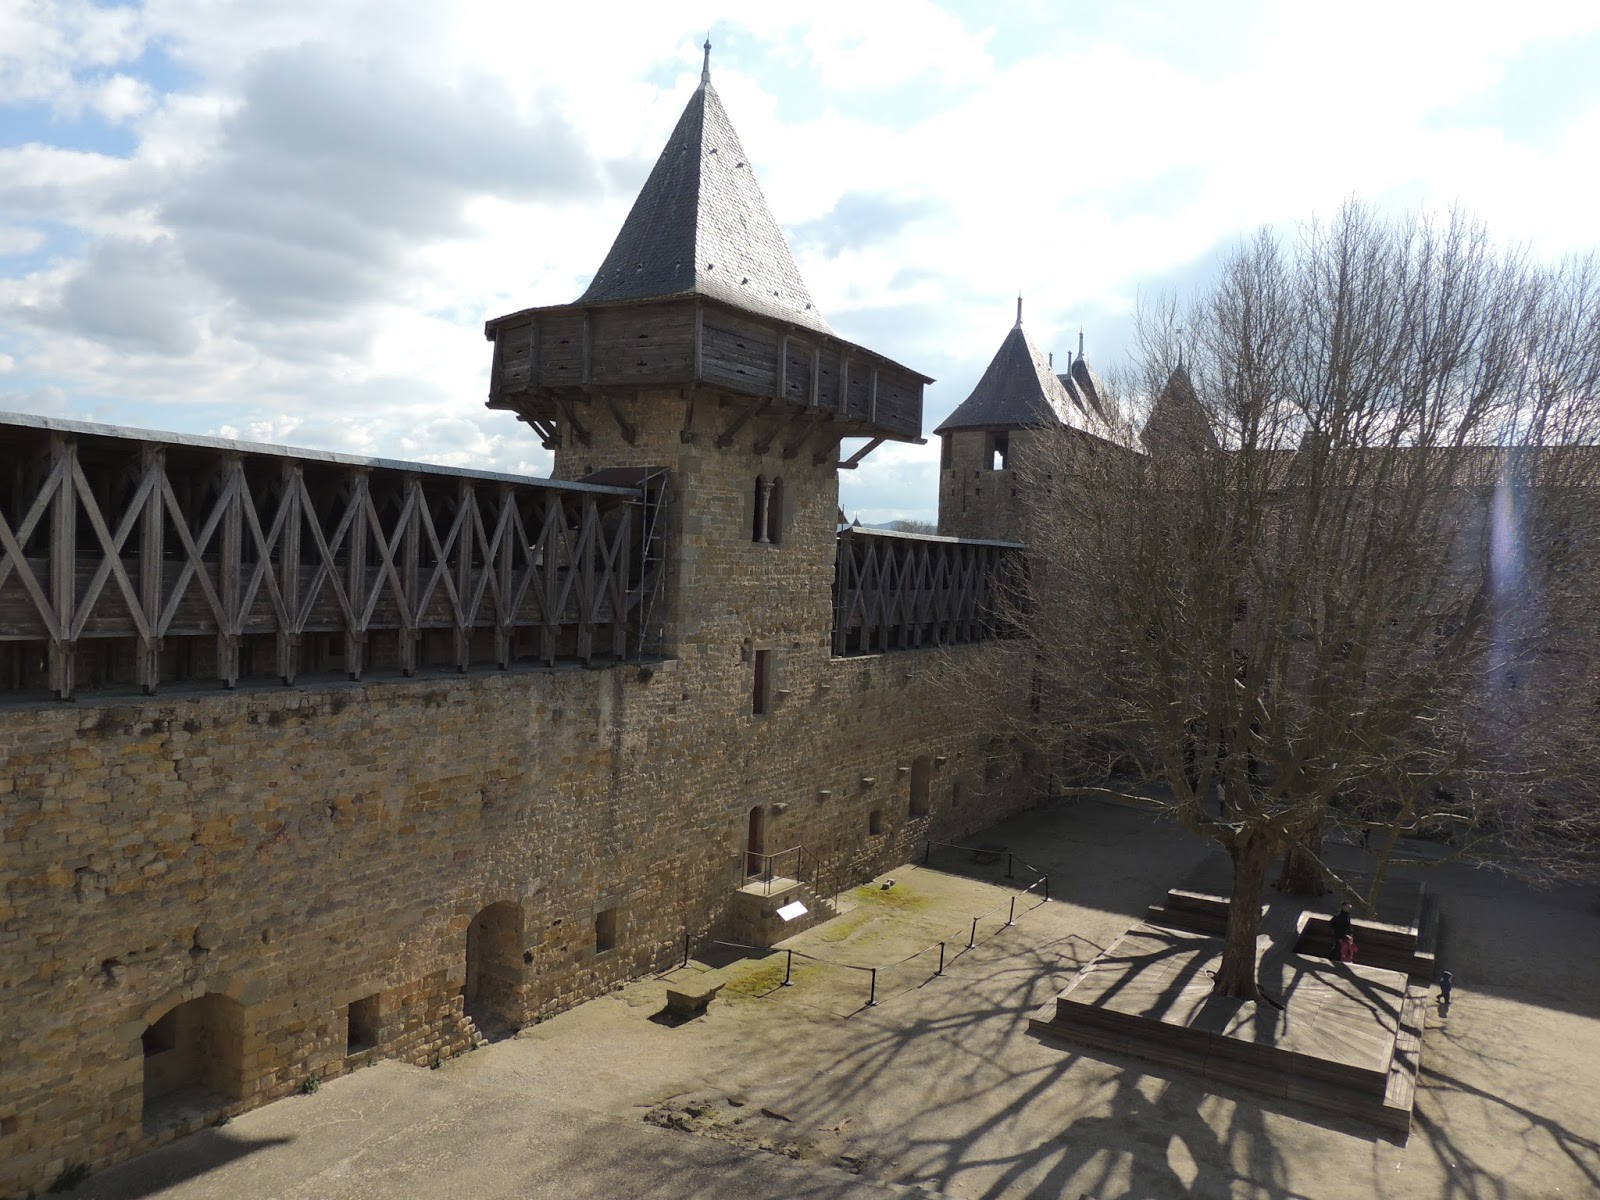 Pueblos y pueblos medievales!! Alucinantes - Blogs de Francia - CARCASSONNE, FRANCIA (20)